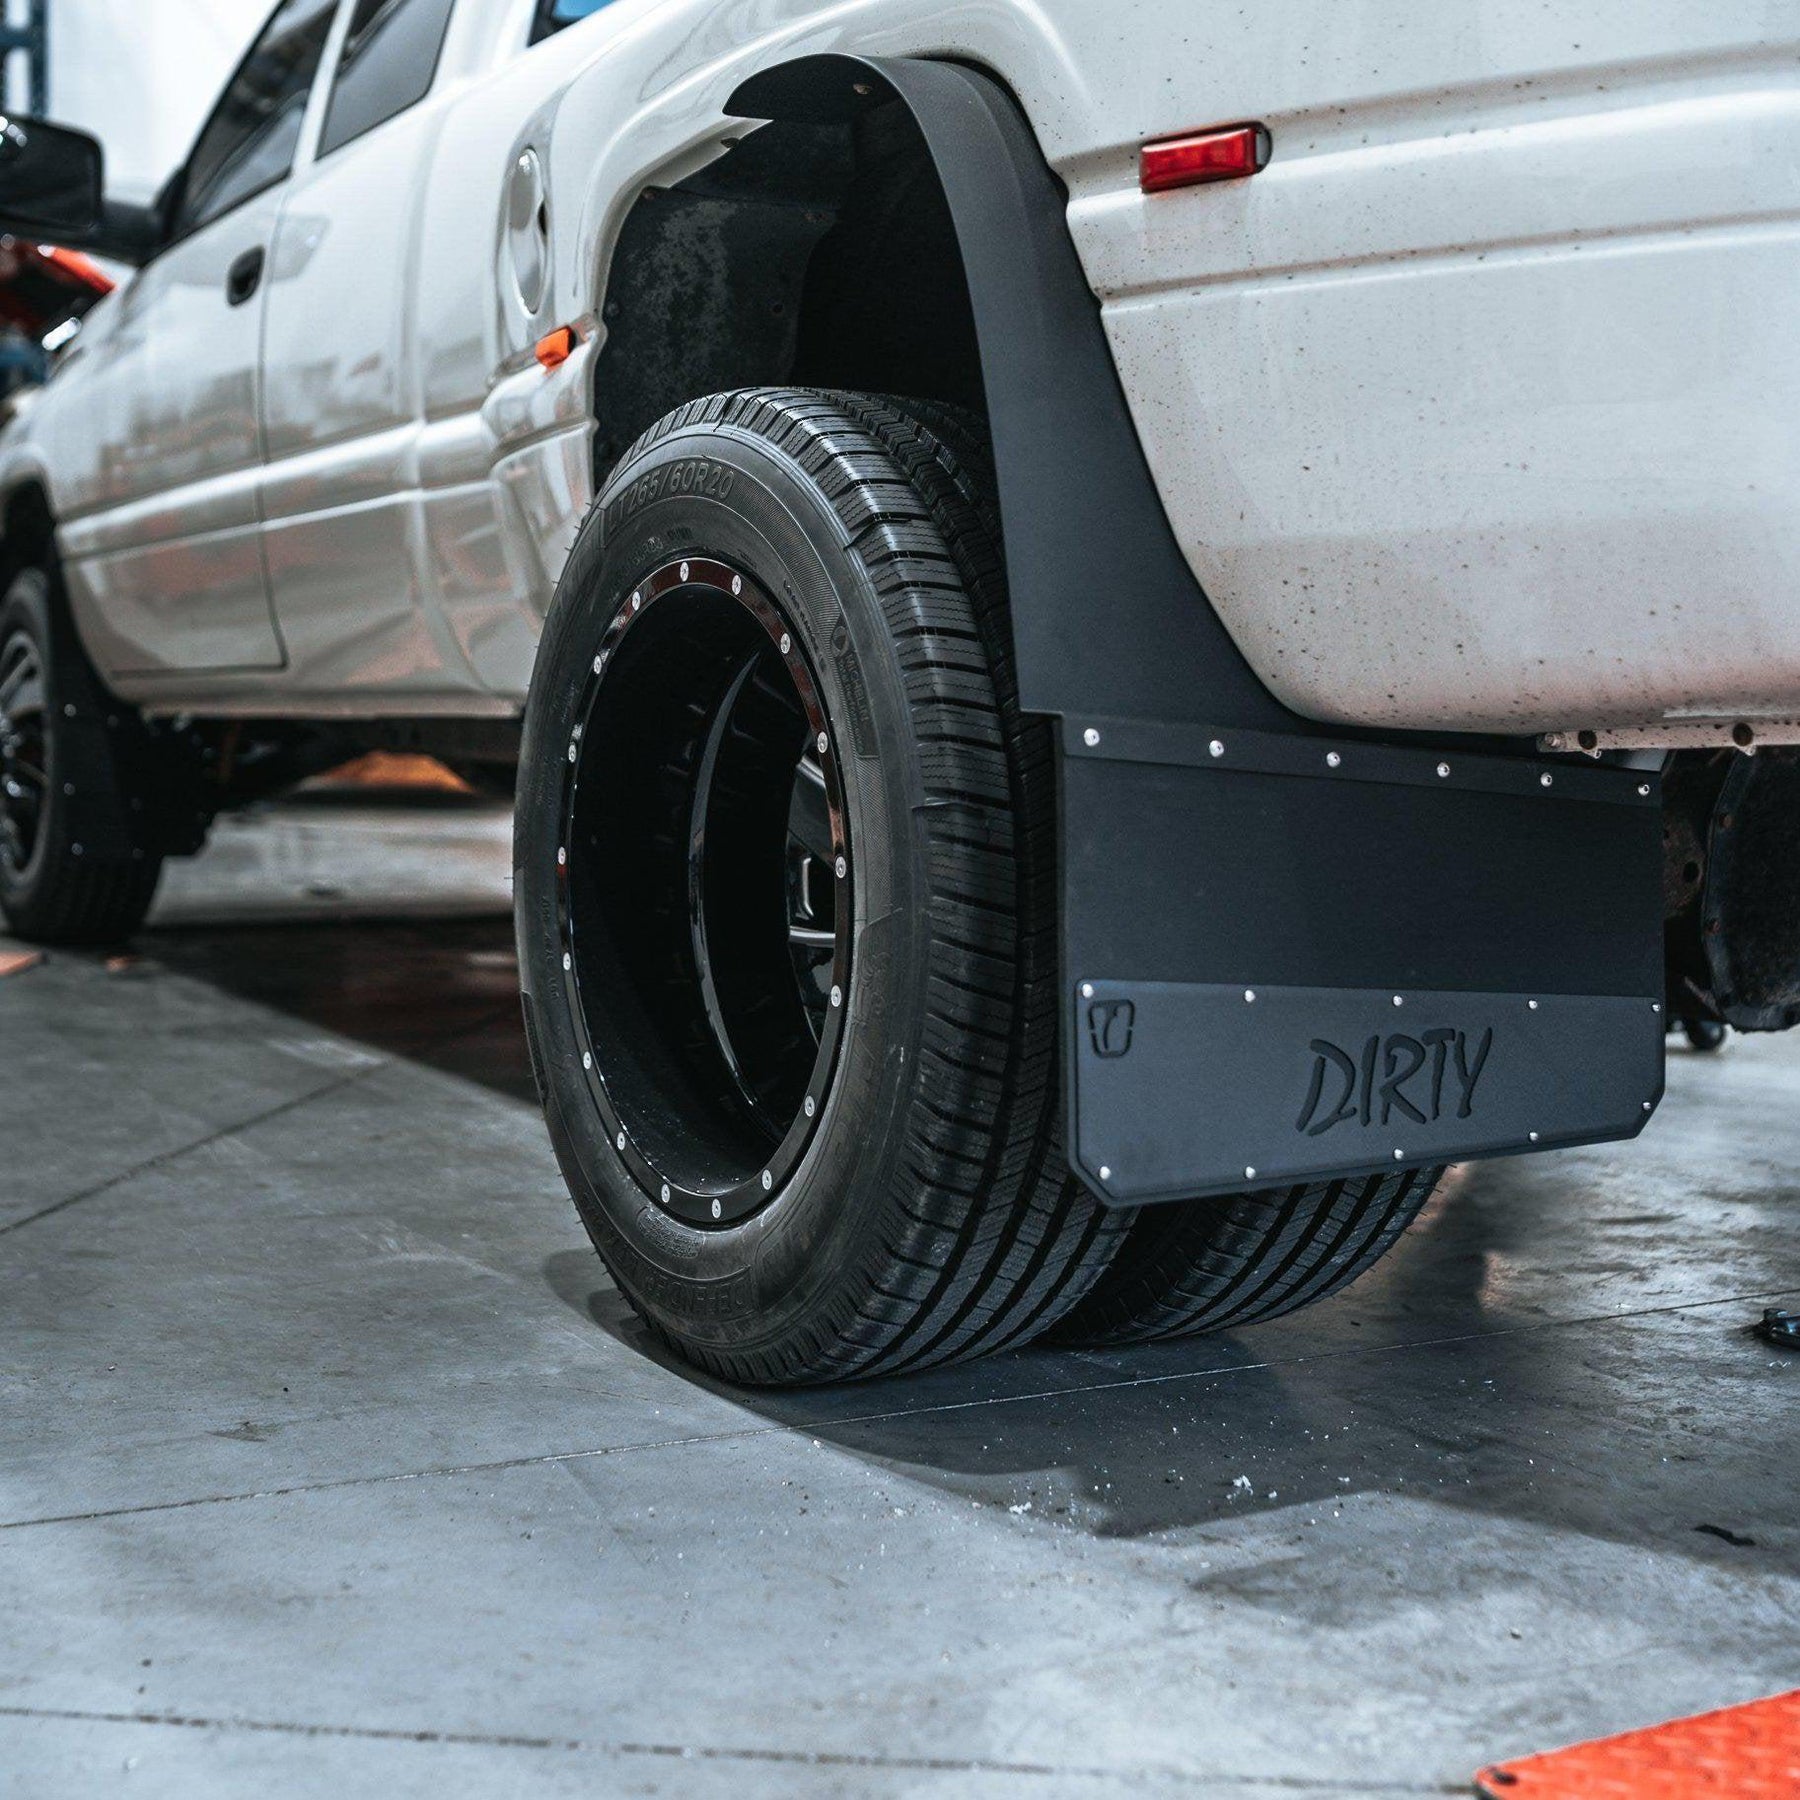 DIRTY Dually Long John Mud Flaps-Mud Flap-Trigger Industries-Dirty Diesel Customs